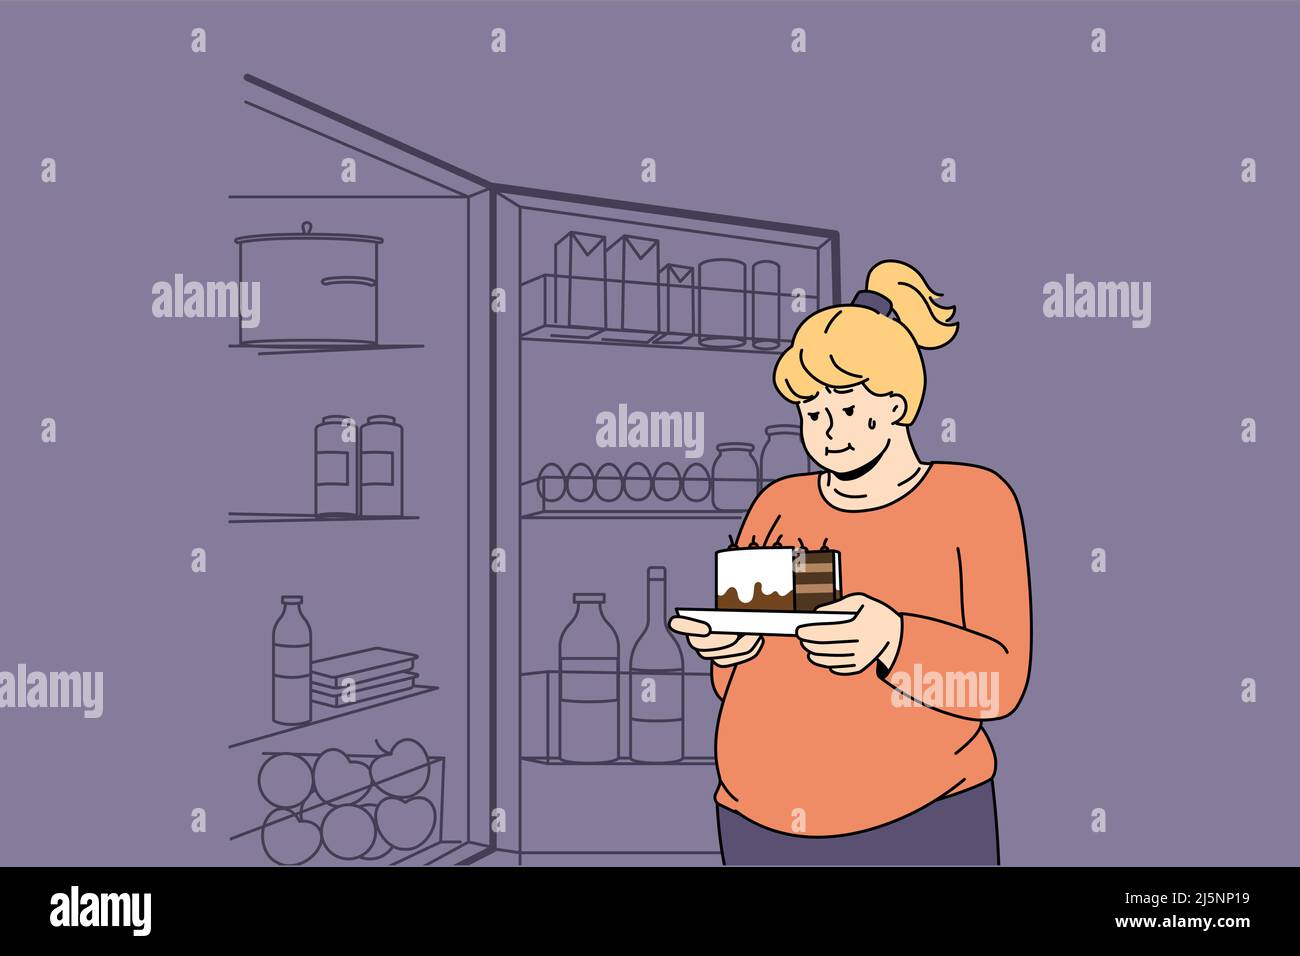 Fat Frau hält ein Stück Kuchen denken an den Verzehr von süßen Sachen. Übergewichtige Frauen in der Nähe eines offenen Kühlschranks leiden unter Übergewicht und Suchtproblemen. Ernährung und gesunde Lebensweise. Vektorgrafik. Stock Vektor